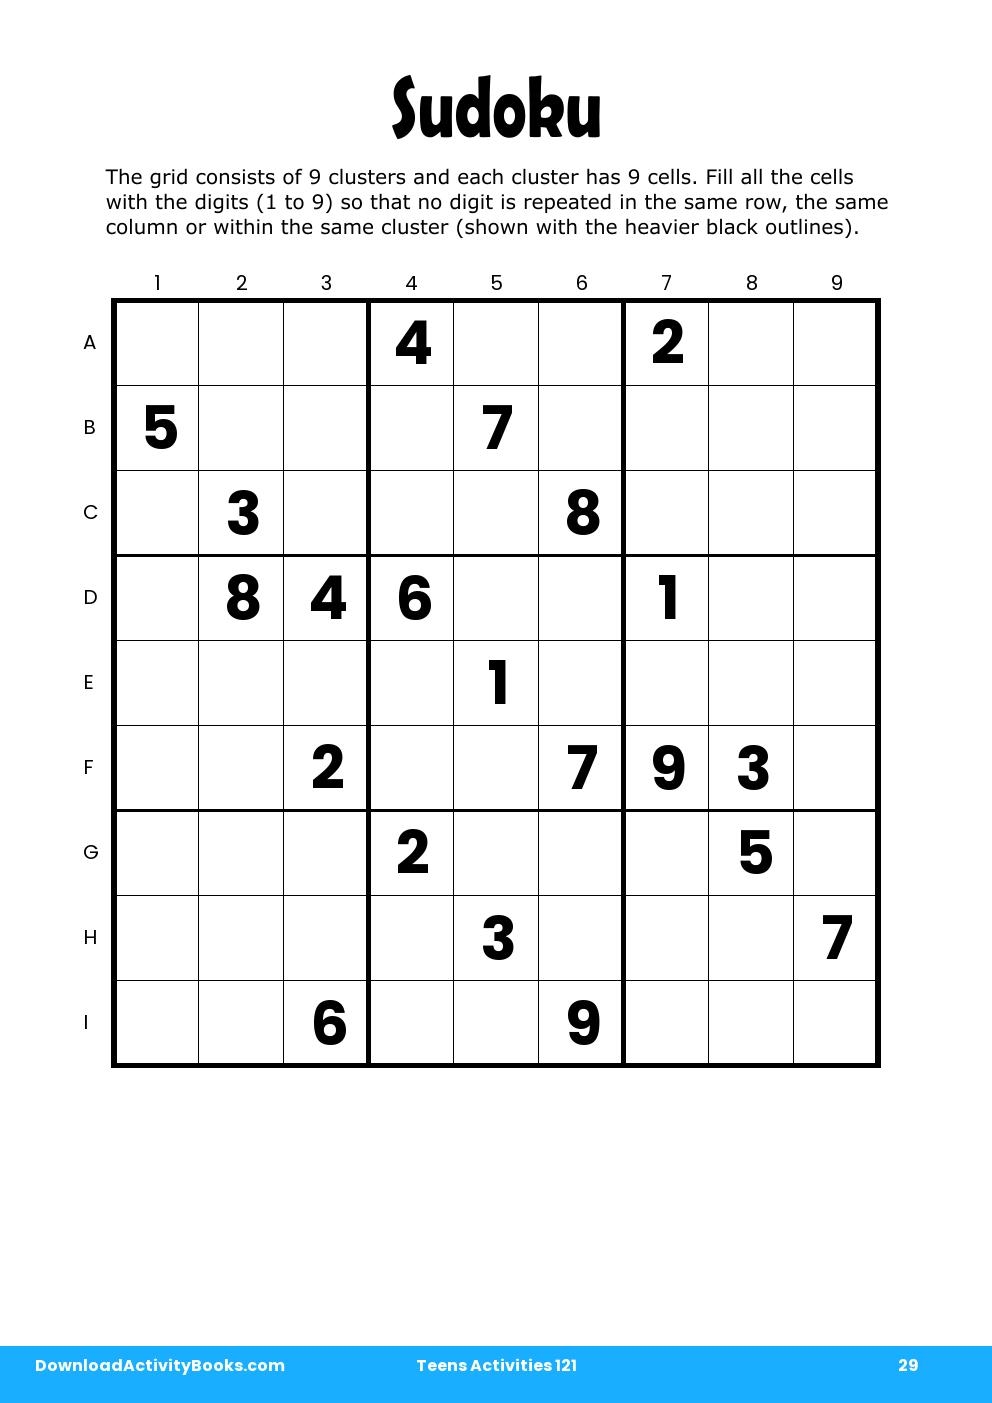 Sudoku in Teens Activities 121